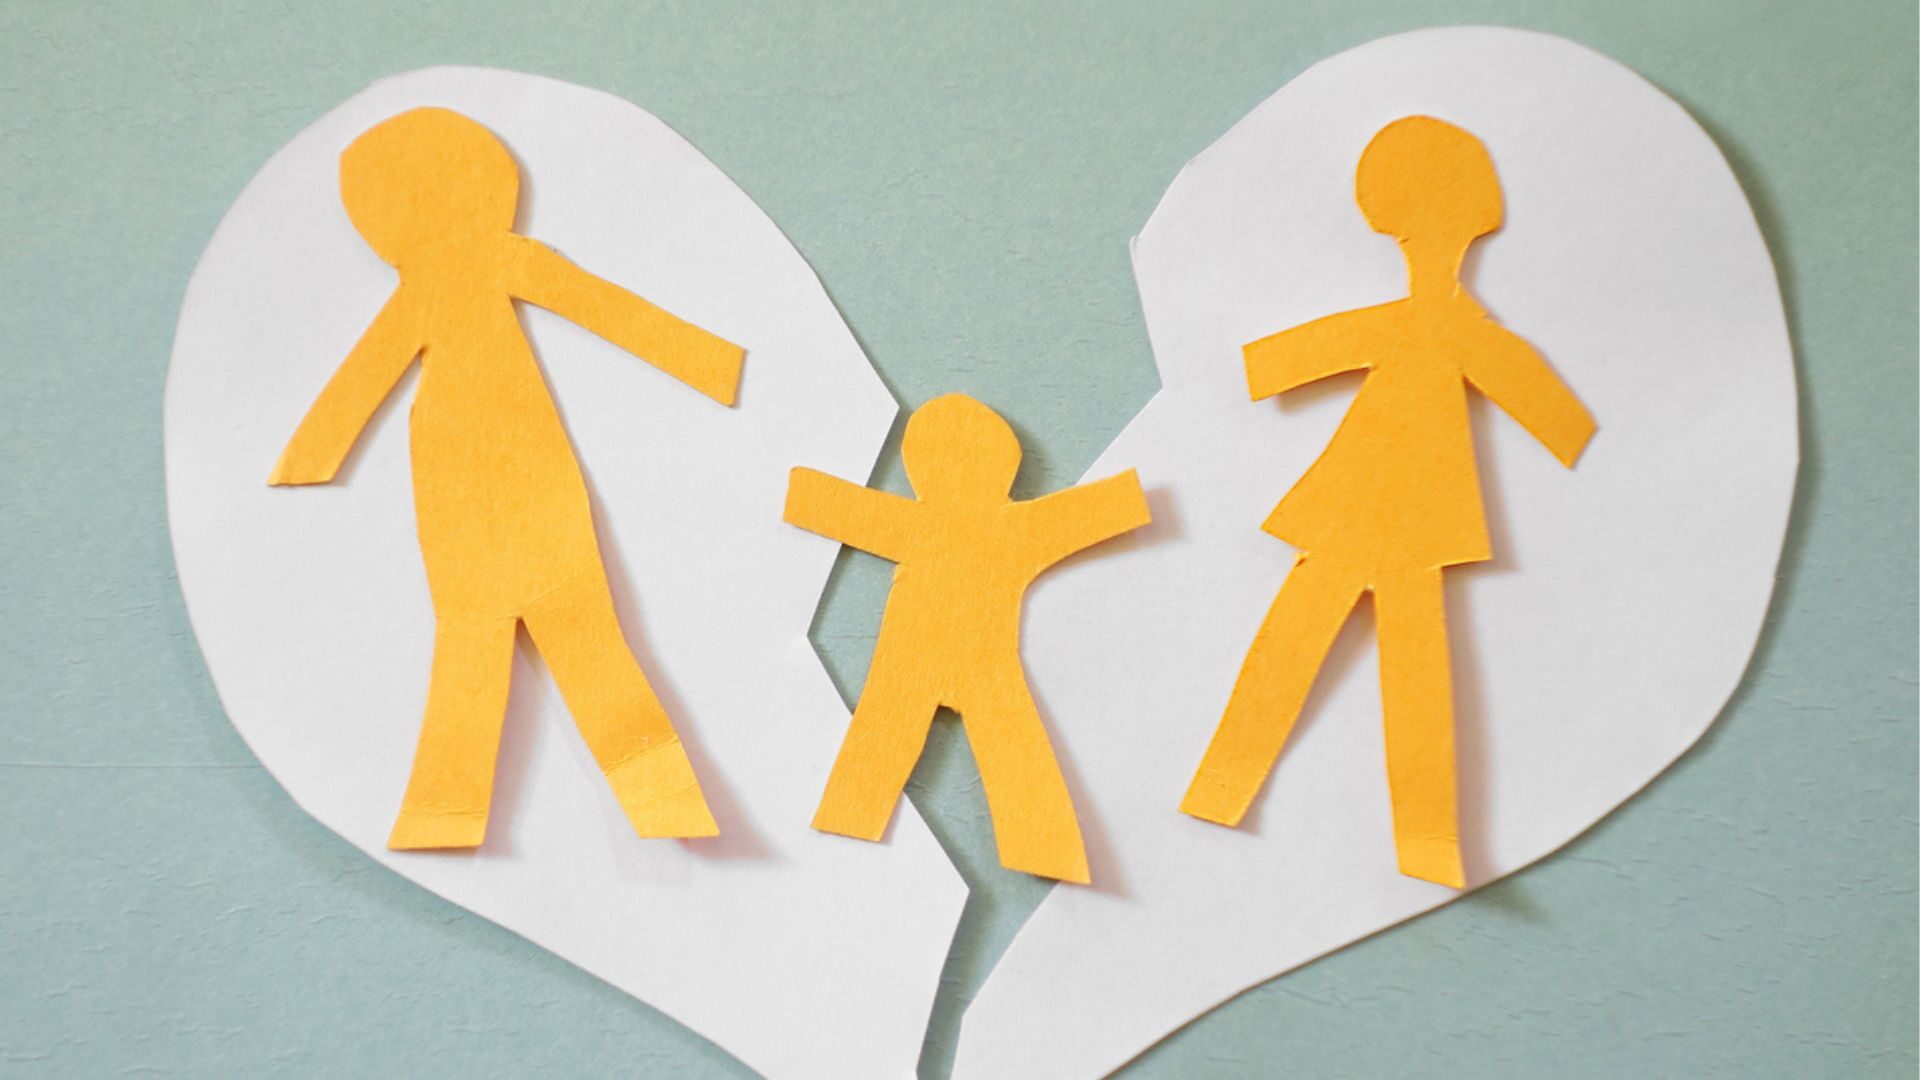 Avioerot aiheuttavat kriisejä, joissa lapset kärsivät kun etävanhempi ja lähivanhempi eivät pääse sopuun asioista.